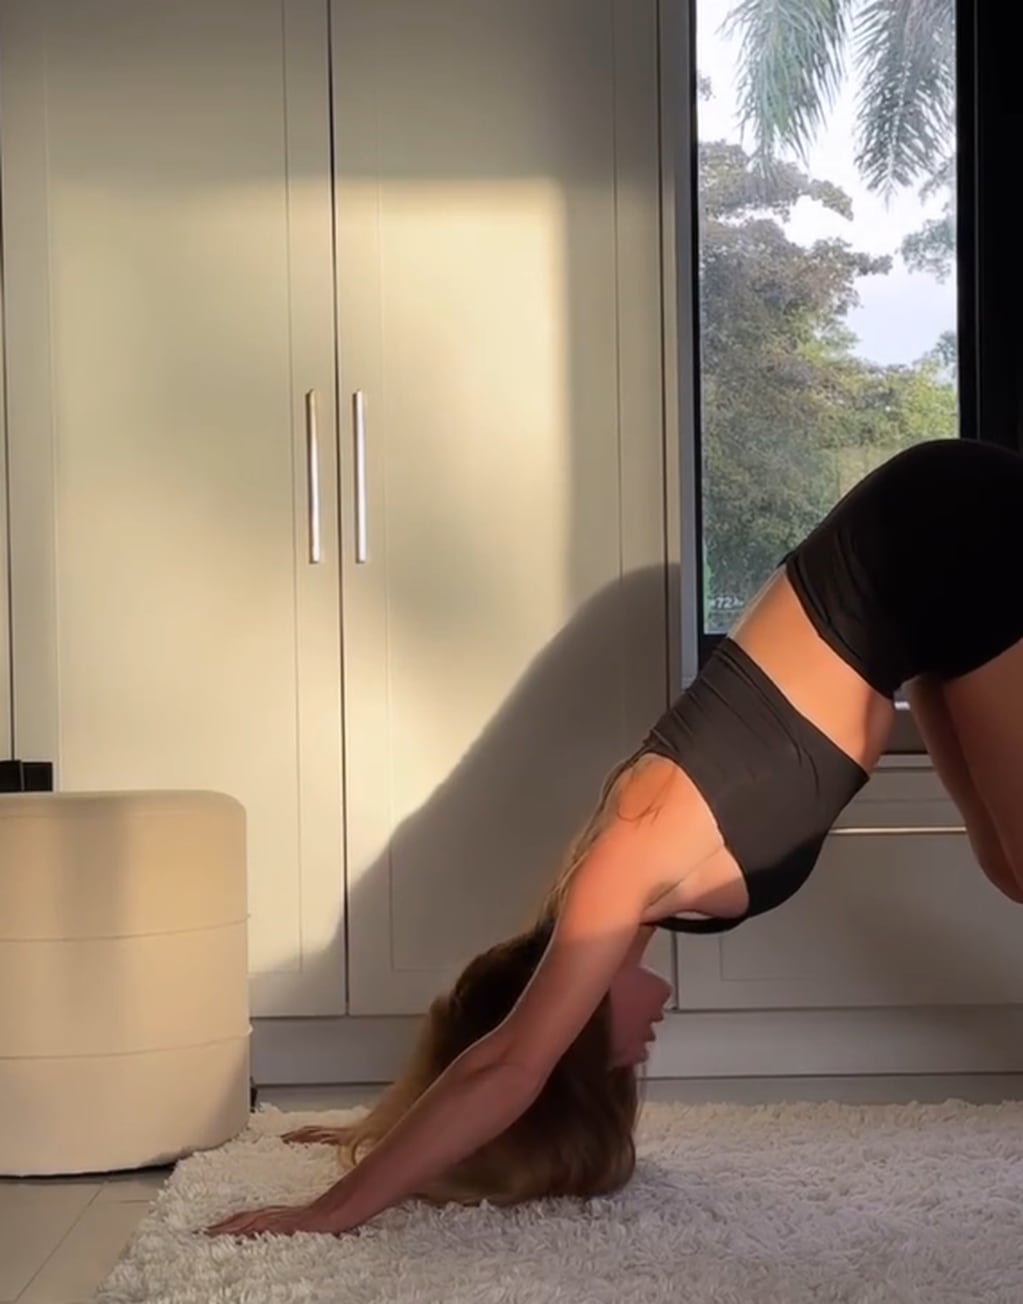 La pose de yoga ULTRA sensual de Rocío Guirado Díaz: "Dar paz..."